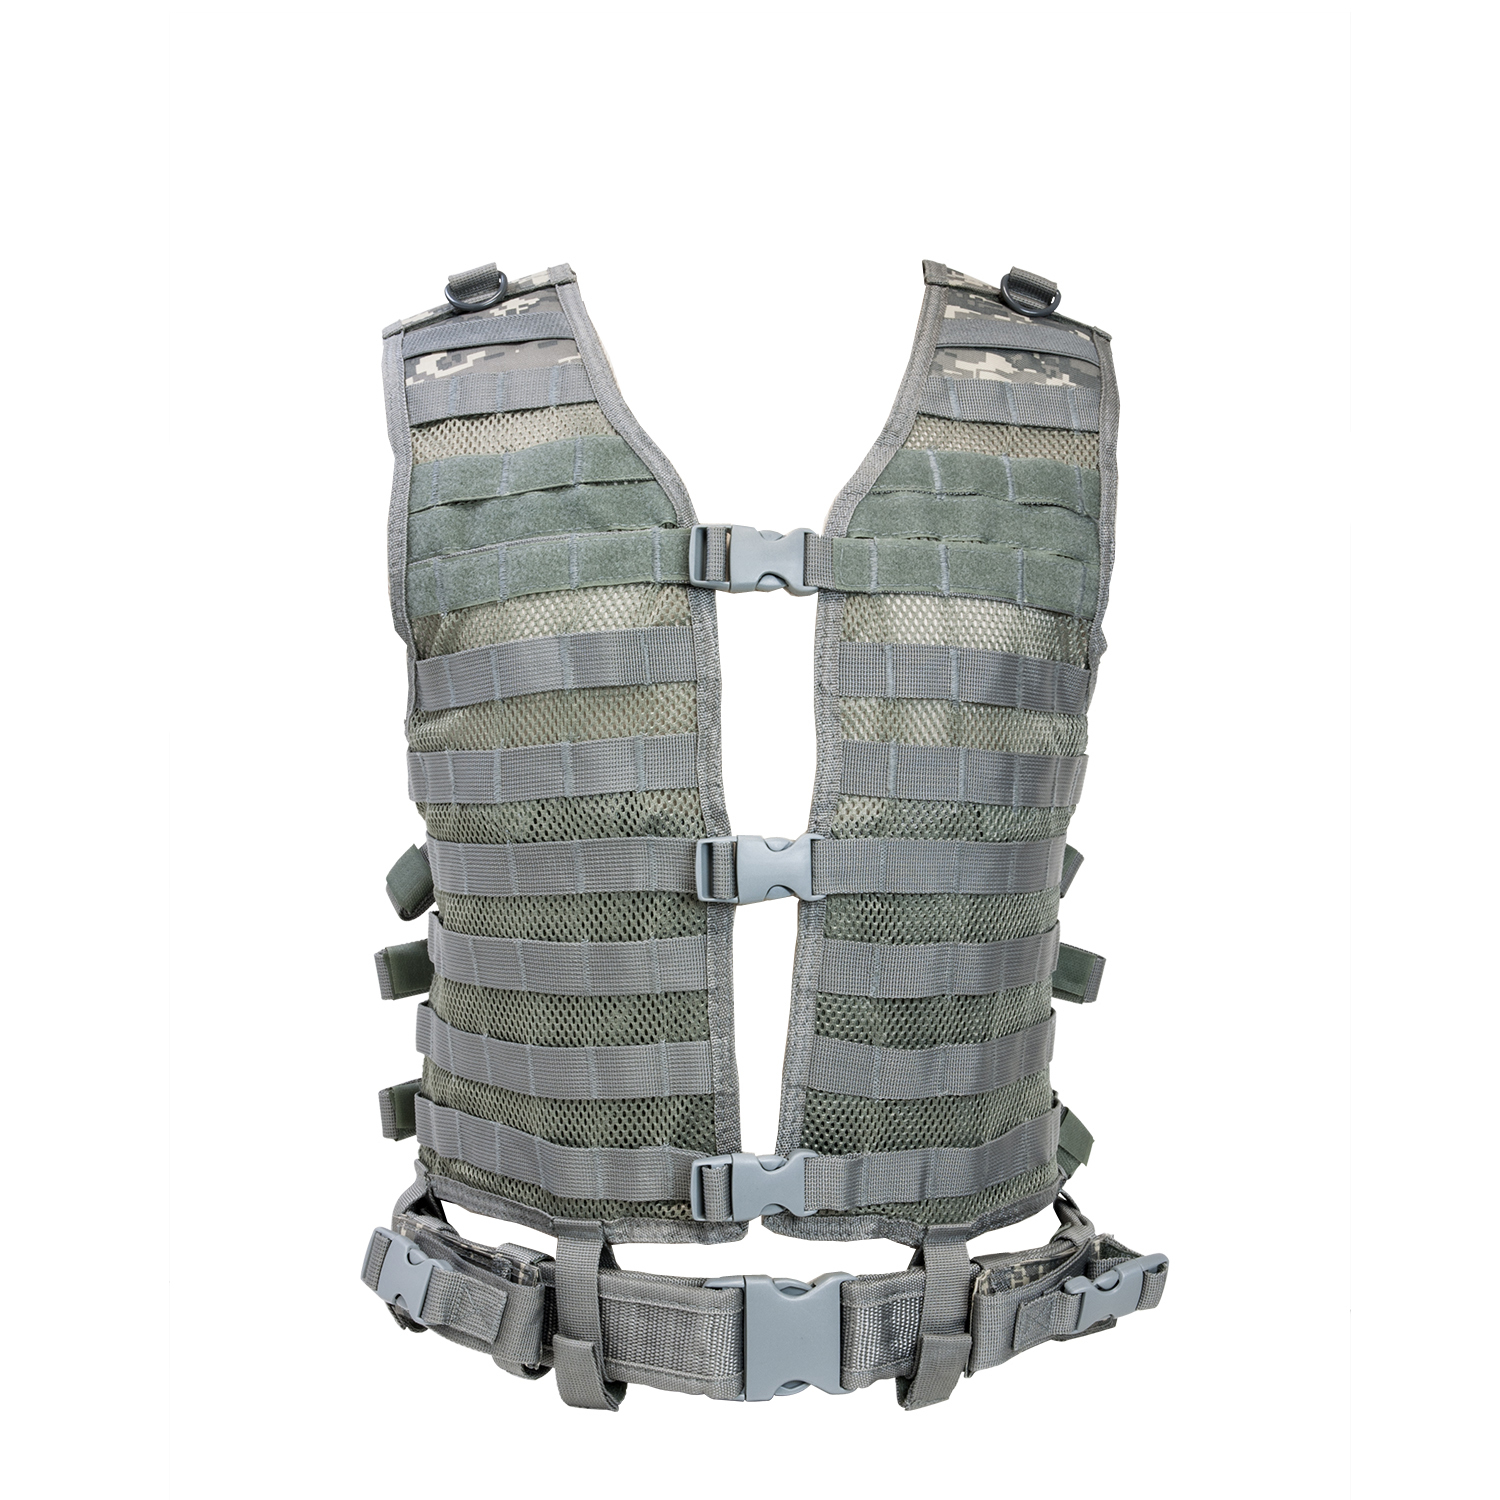 PALS MOLLE Tactical Combat Vest With Web Belt - Multiple Colors